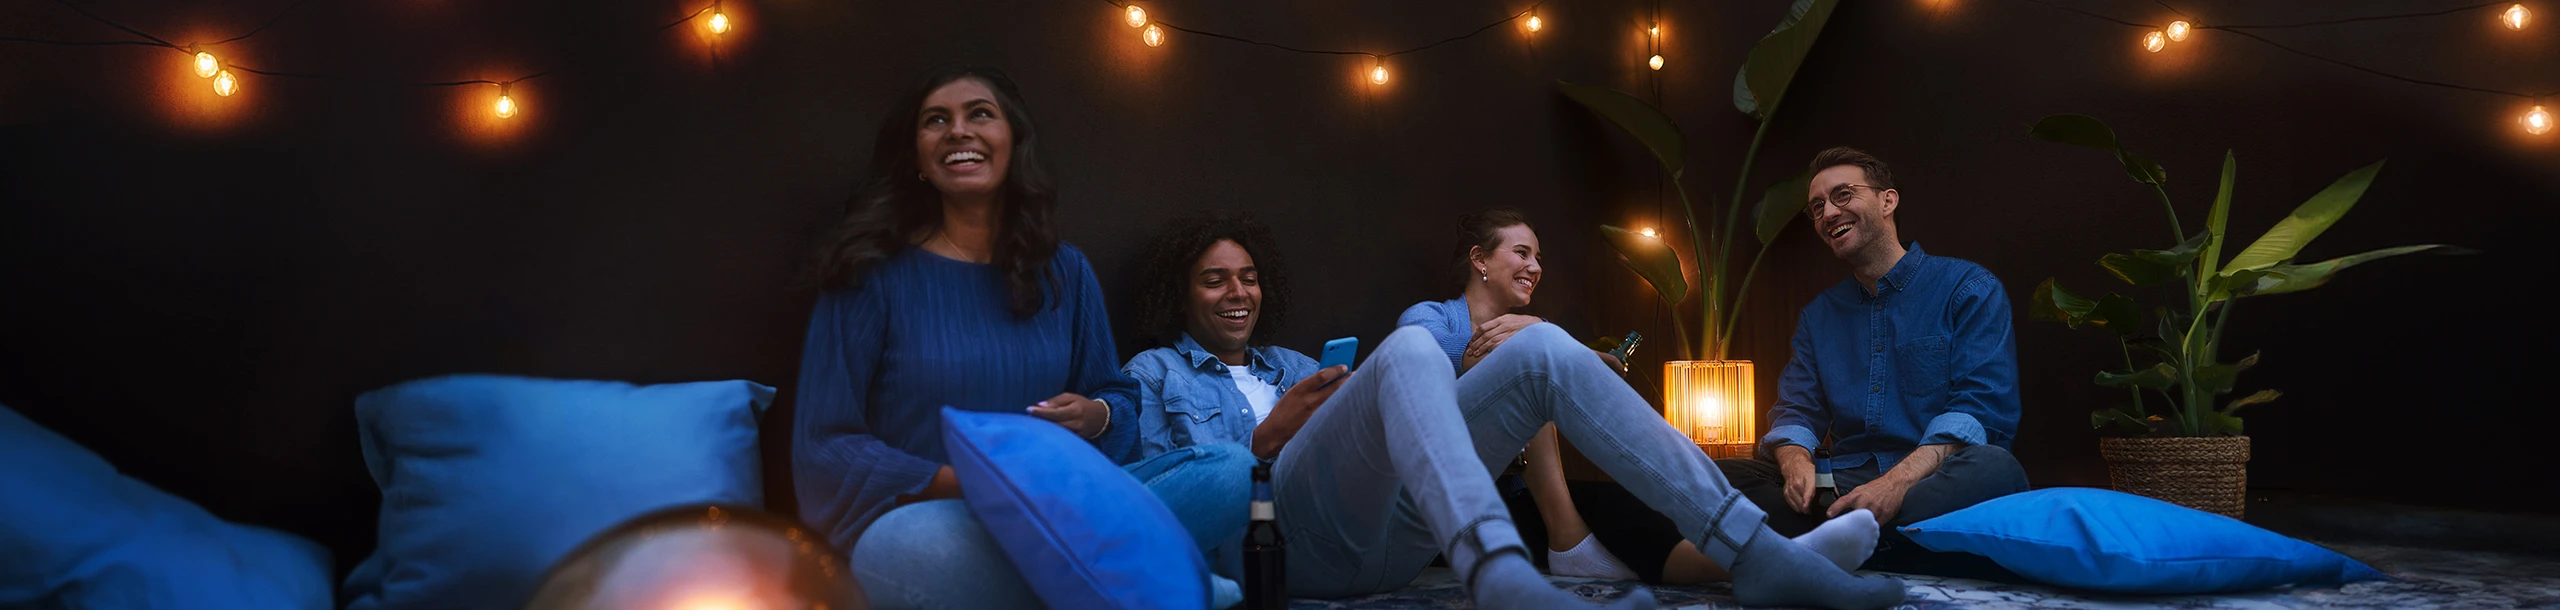 Gruppe junger Leute sitzt entspannt auf Dachterrasse im Dämmerlicht